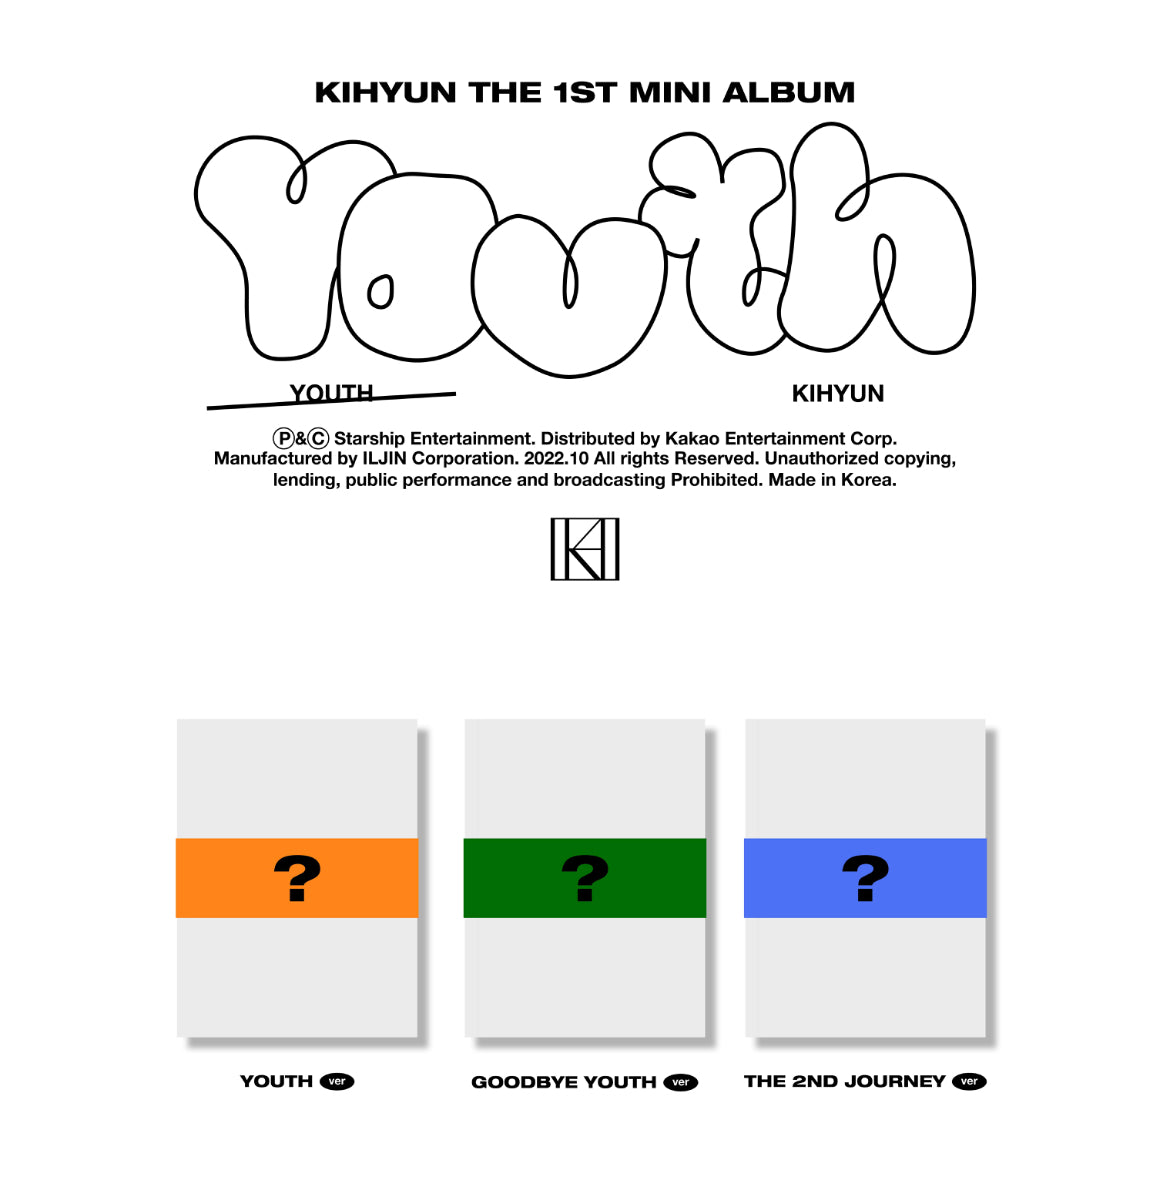 Kihyun [YOUTH] 1st Mini Album